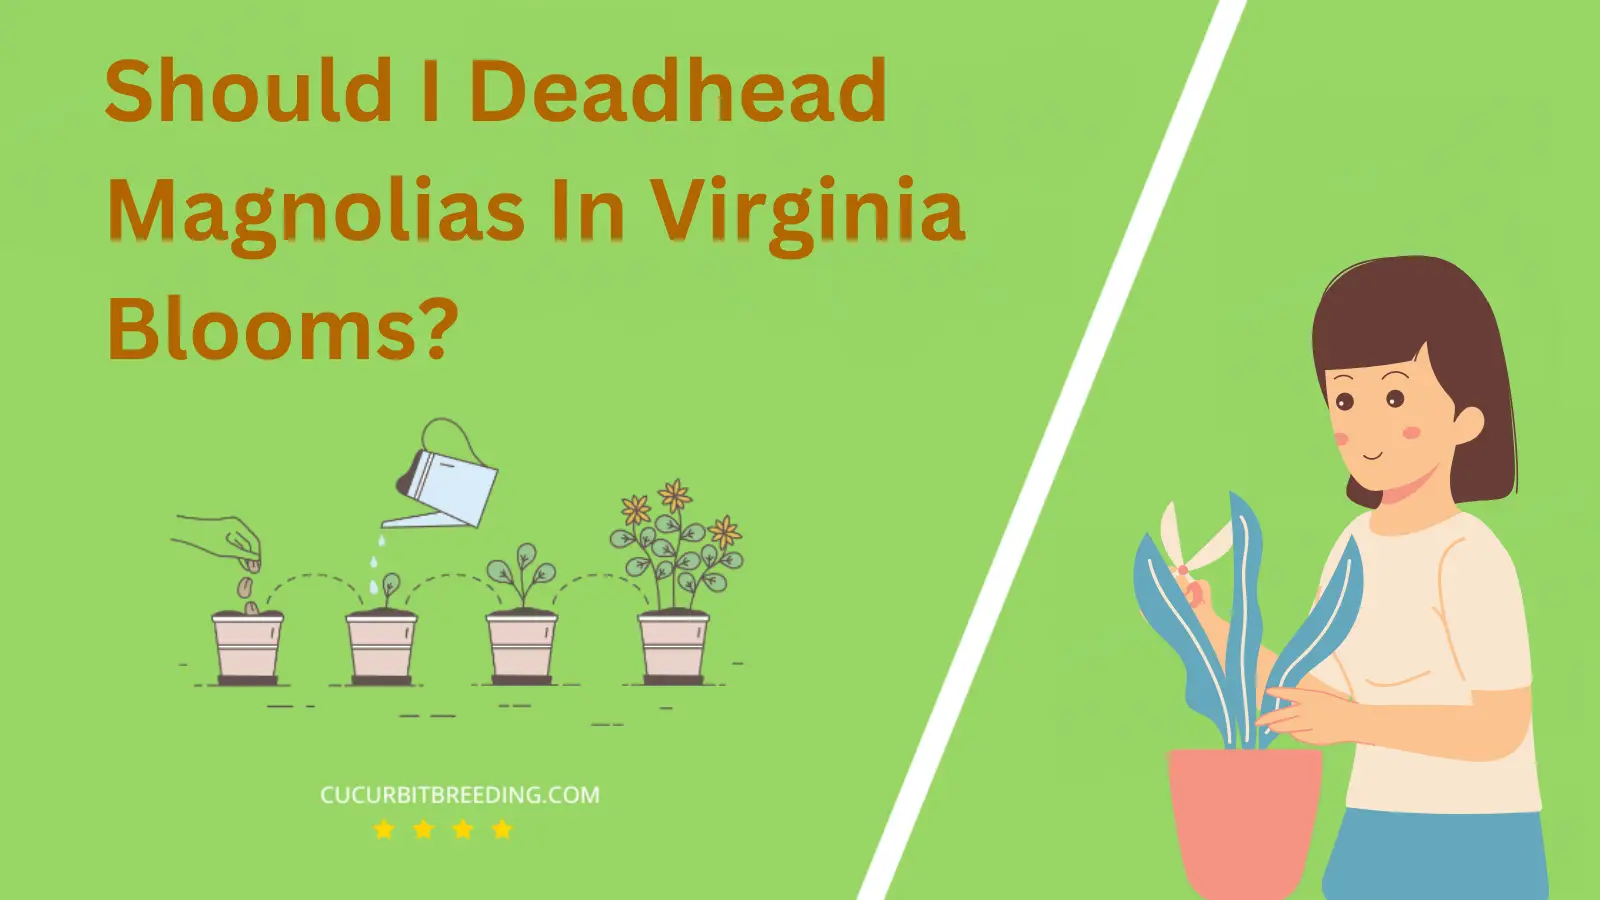 Should I Deadhead Magnolias In Virginia Blooms?